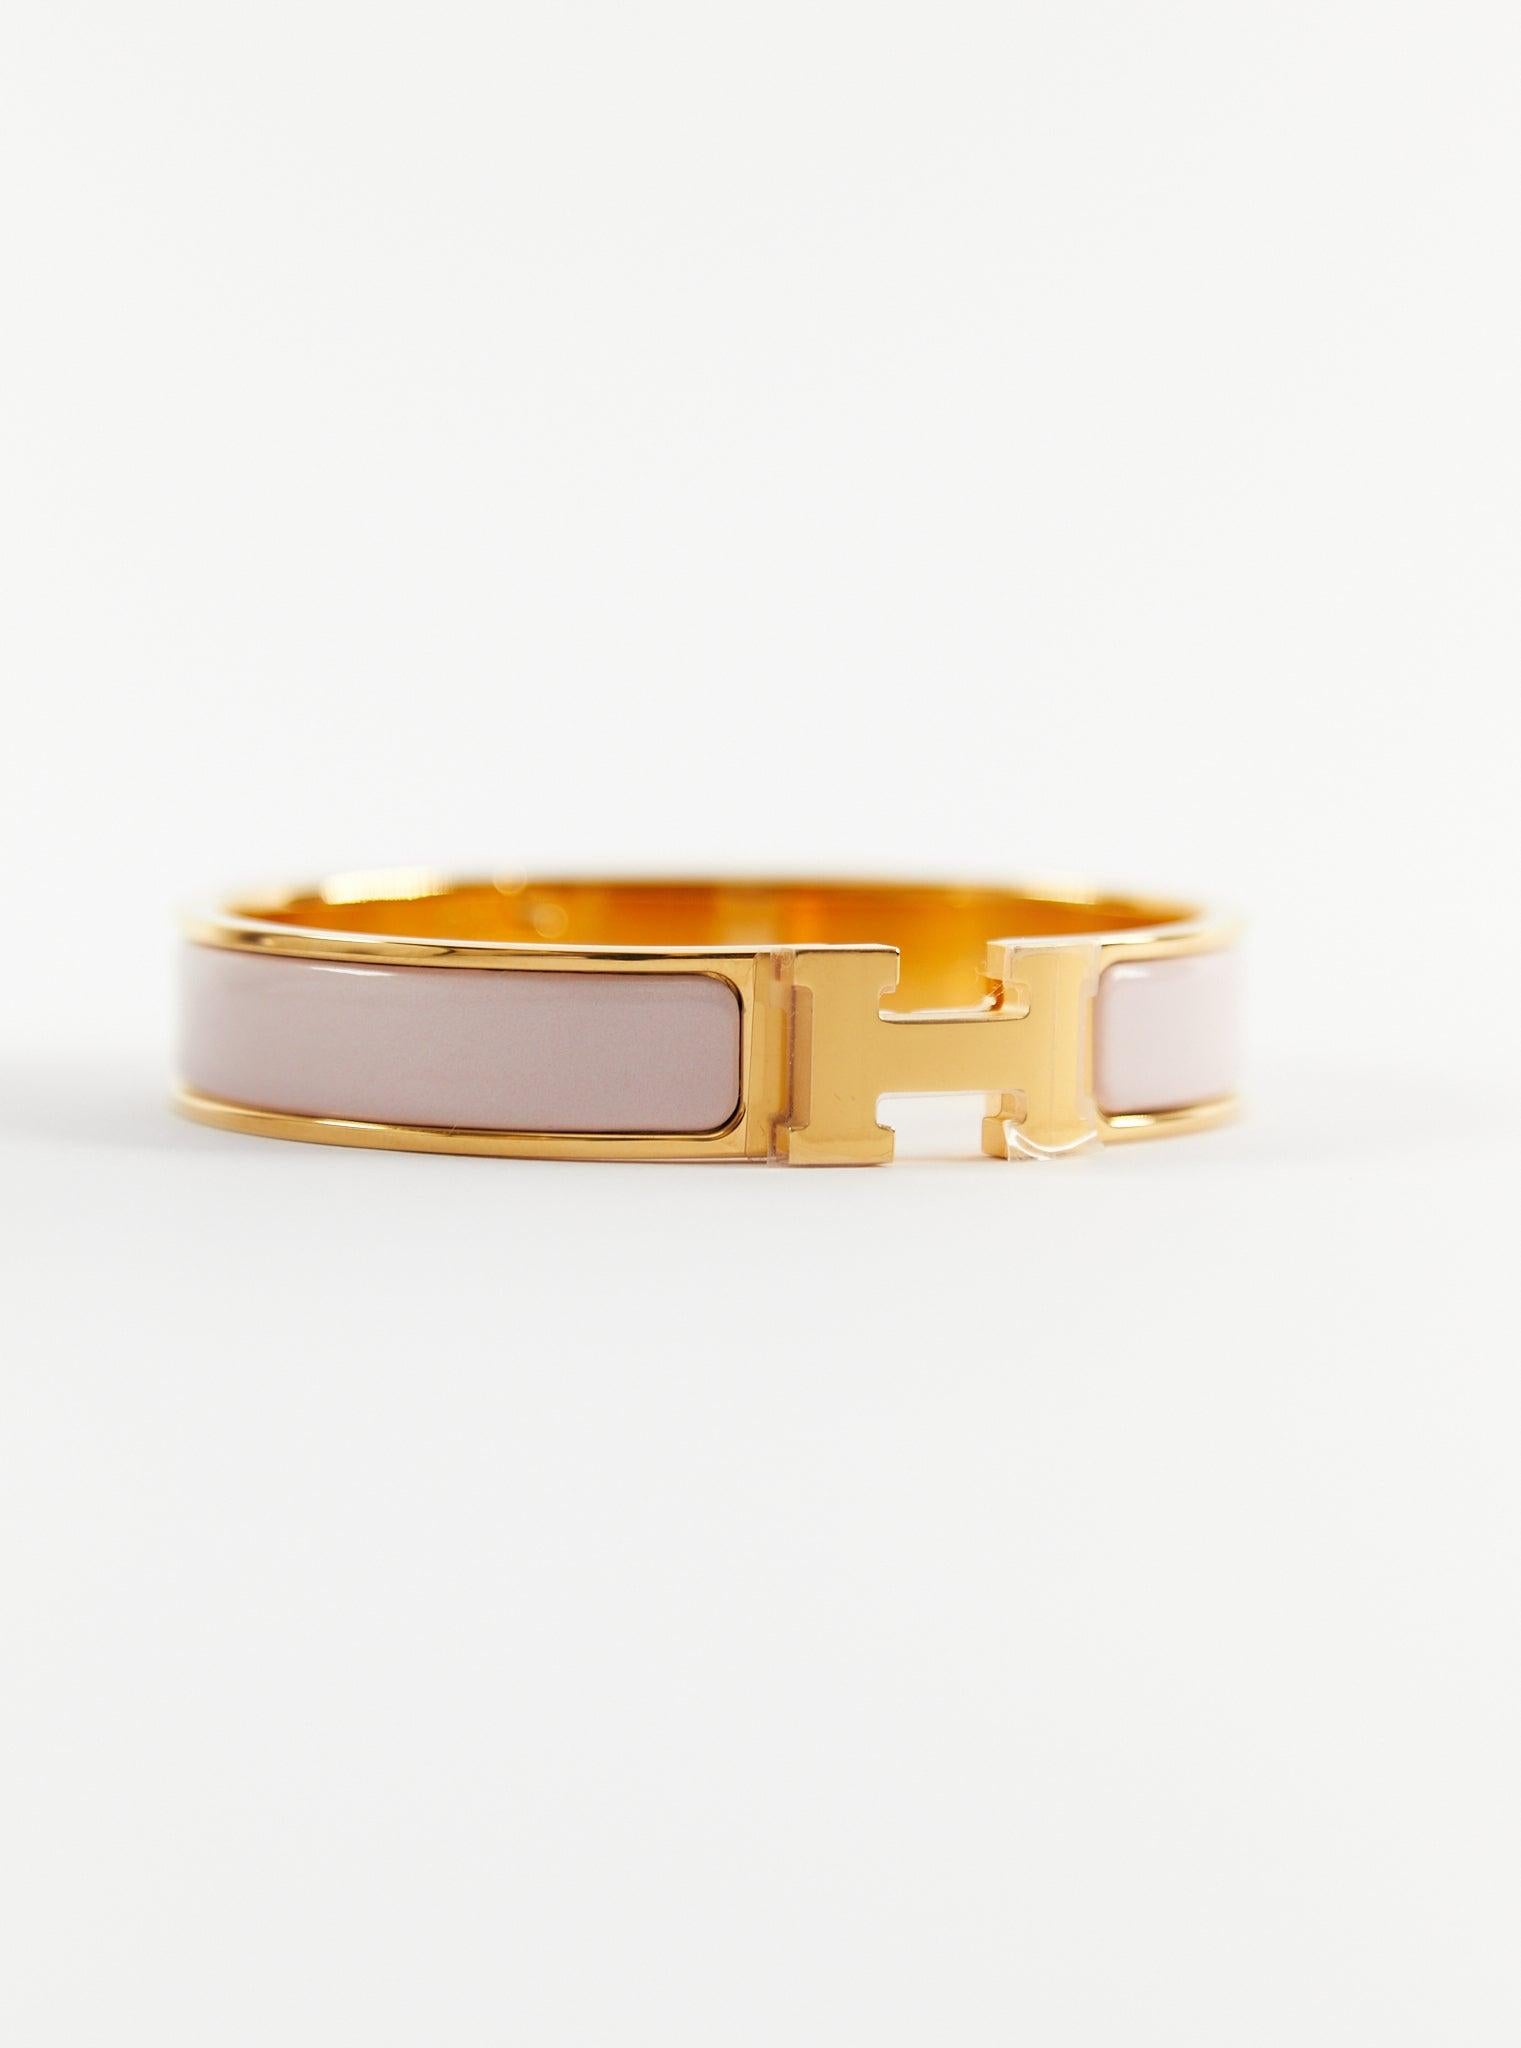 Bracelet Clic H PM d'Hermès en or rose et candeur

Taille du poignet : 16.8 cm  Largeur : 12 mm

Fabriqué en France